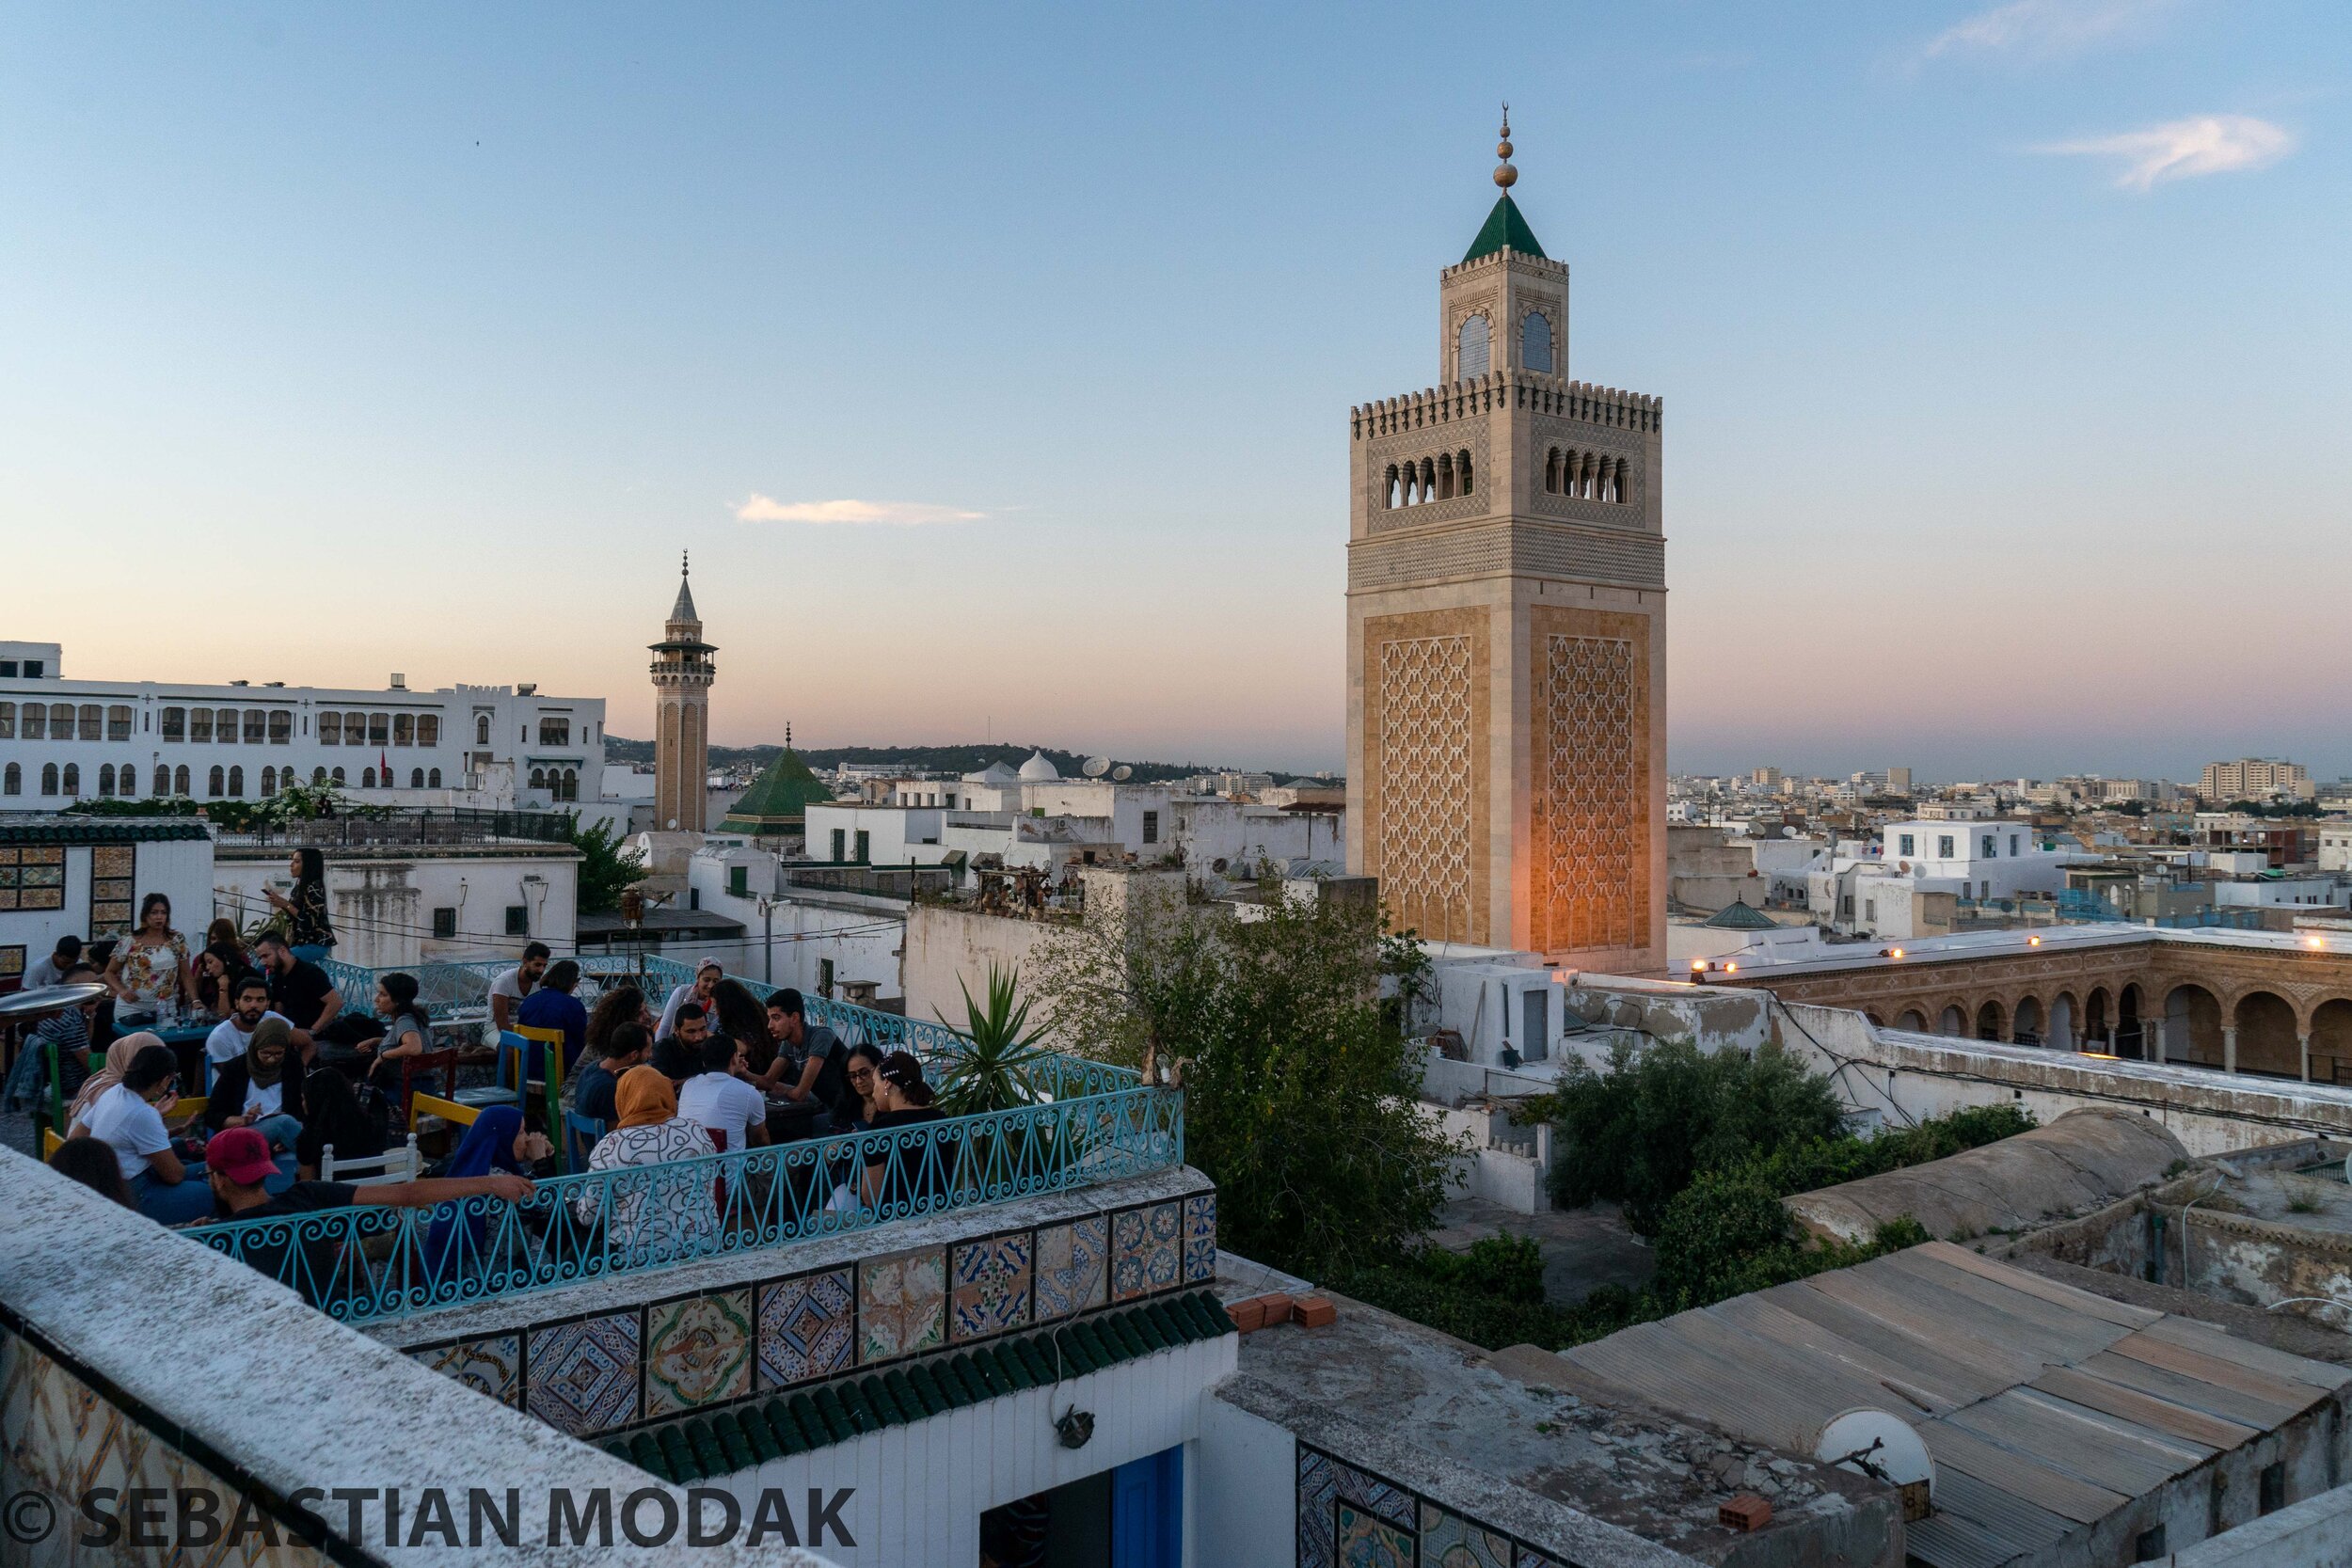  Tunis, Tunisia 